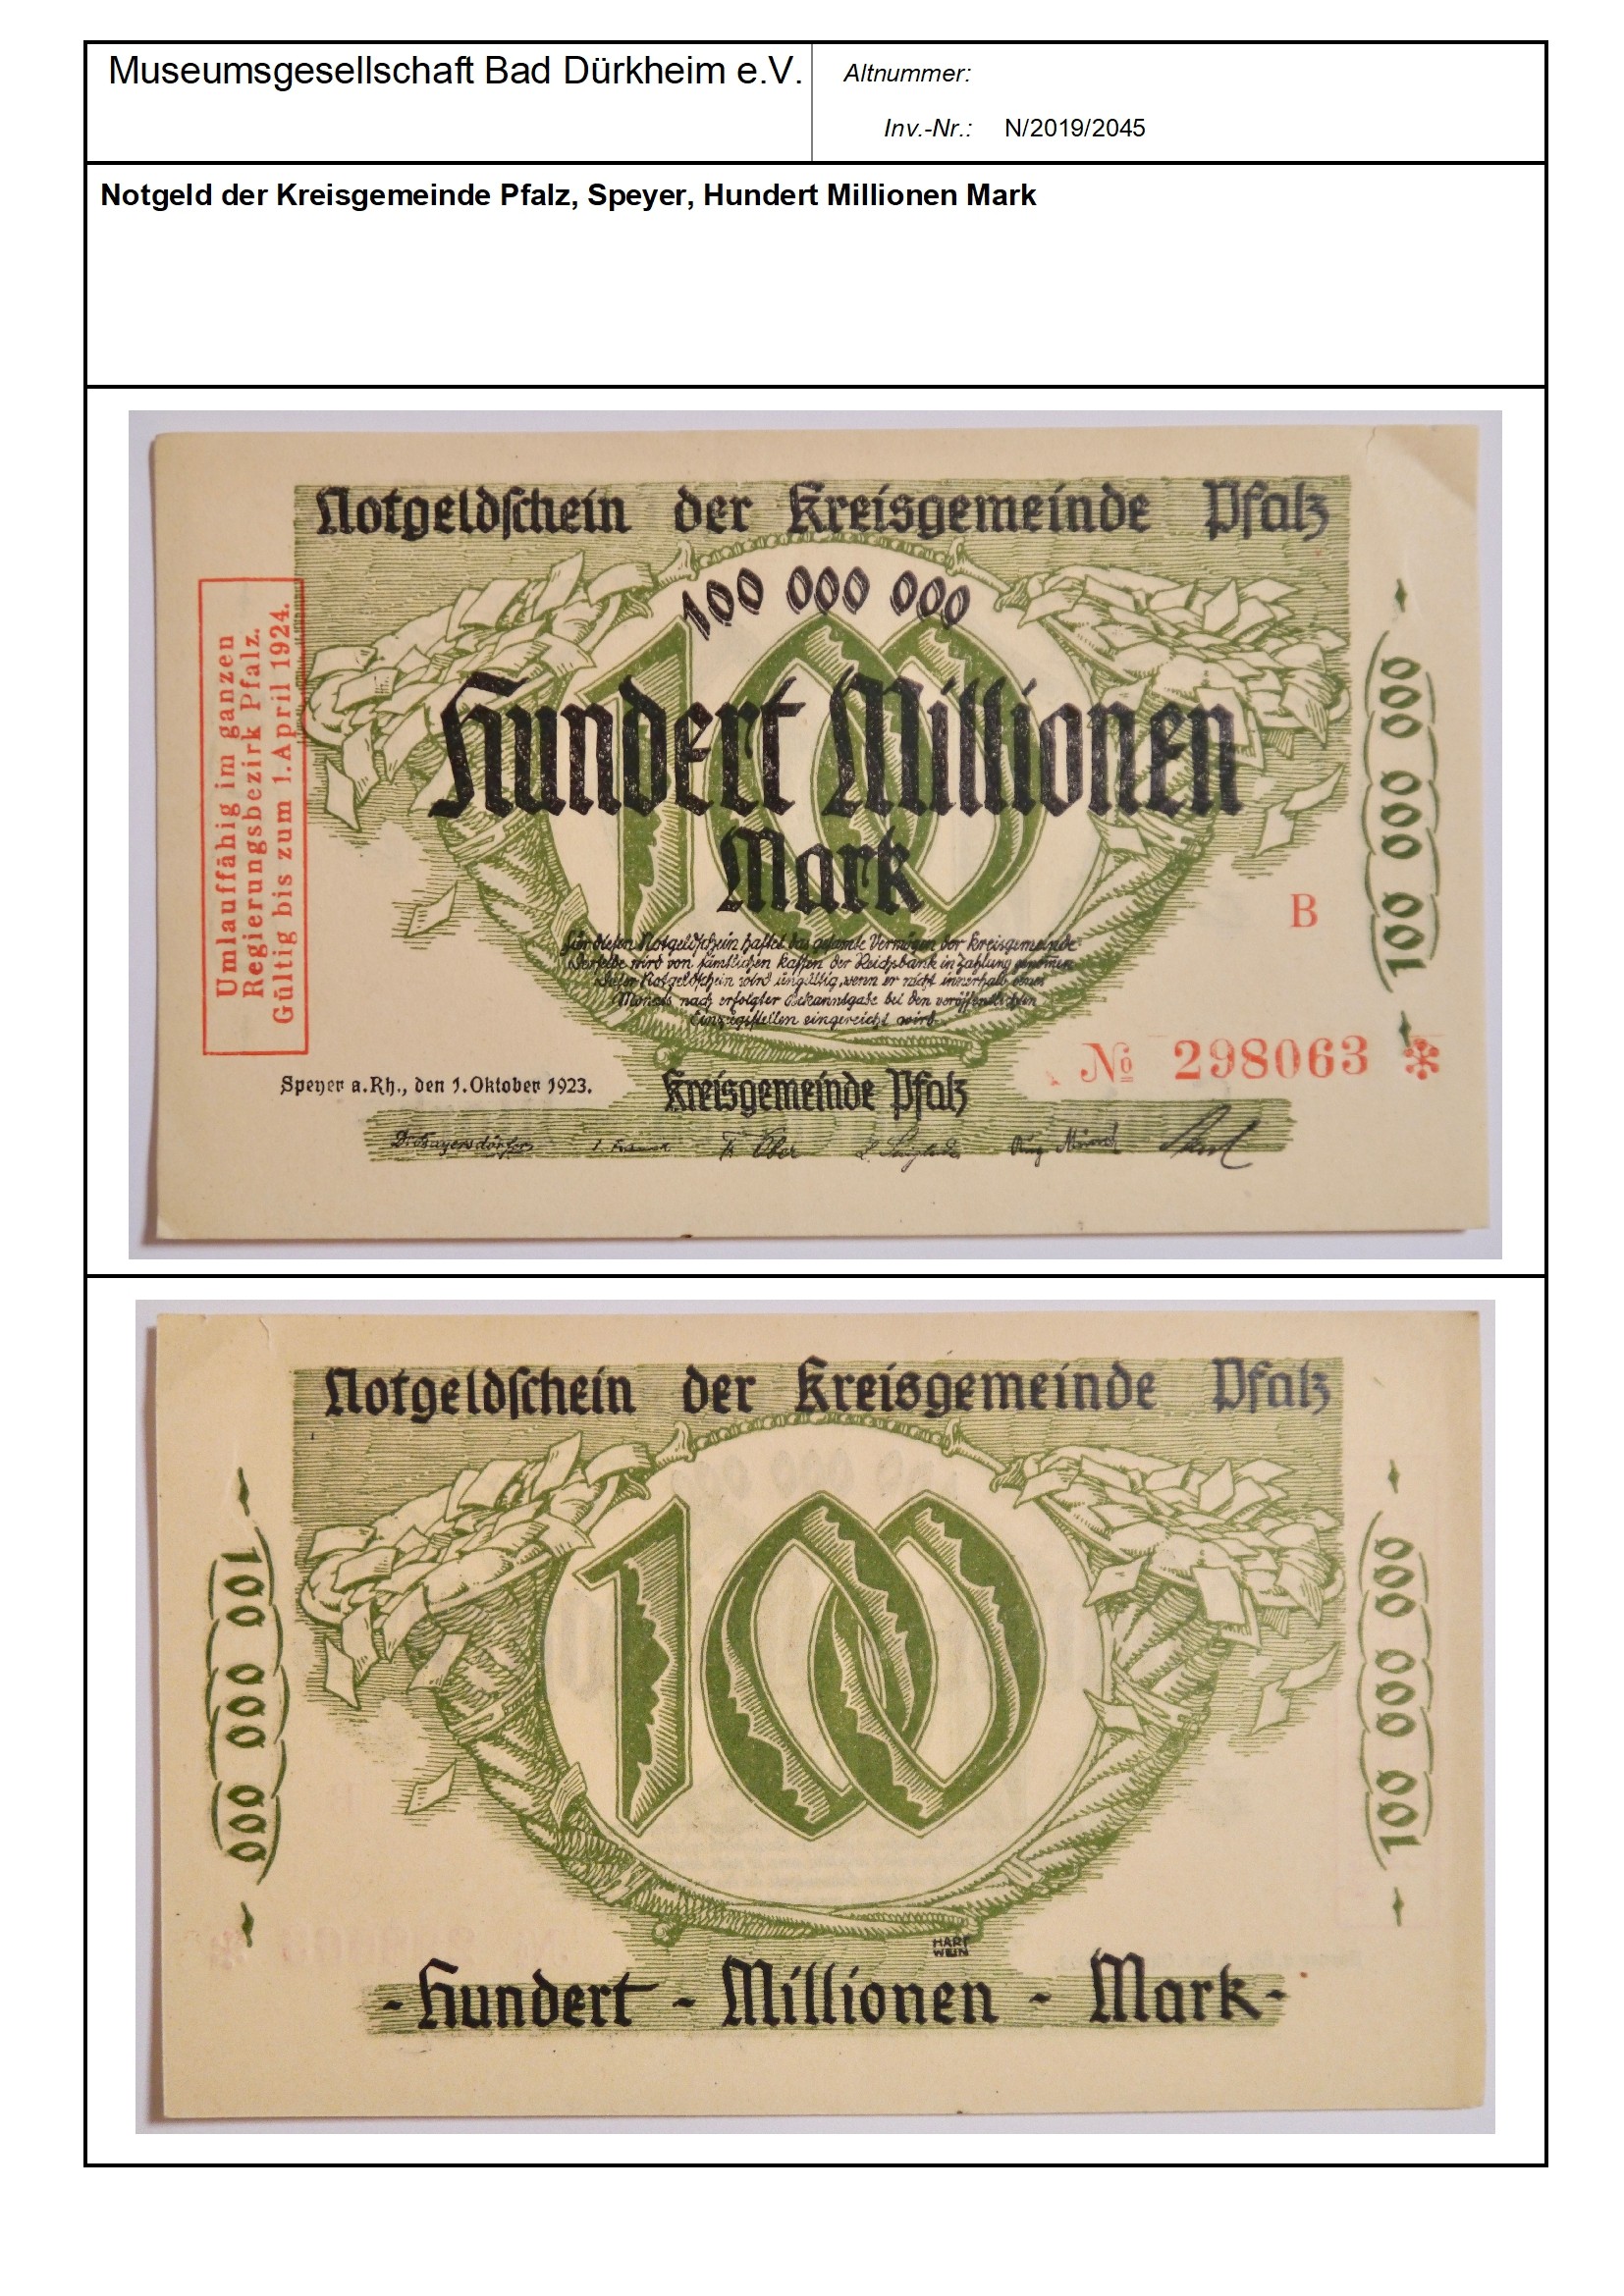 Notgeld der Kreisgemeinde Pfalz, Speyer, Hundert Millionen Mark
Serien-Nummer: NO 298063 (Museumsgesellschaft Bad Dürkheim e.V. CC BY-NC-SA)